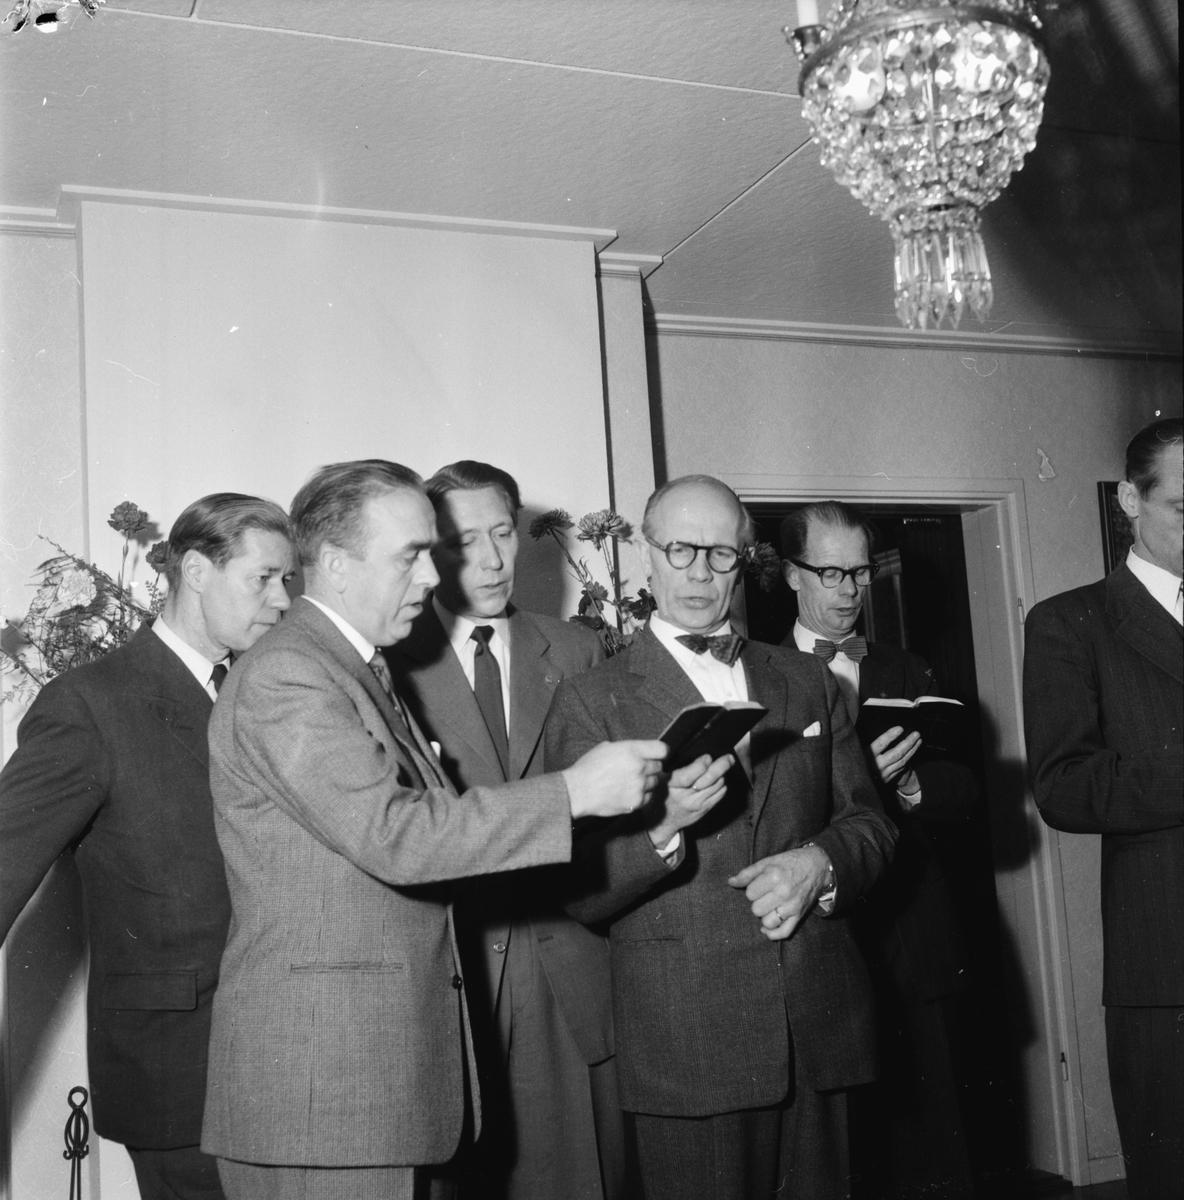 Kyrkoherde Åke Bungner,
Radioandakt på folkhögskolan, 1957